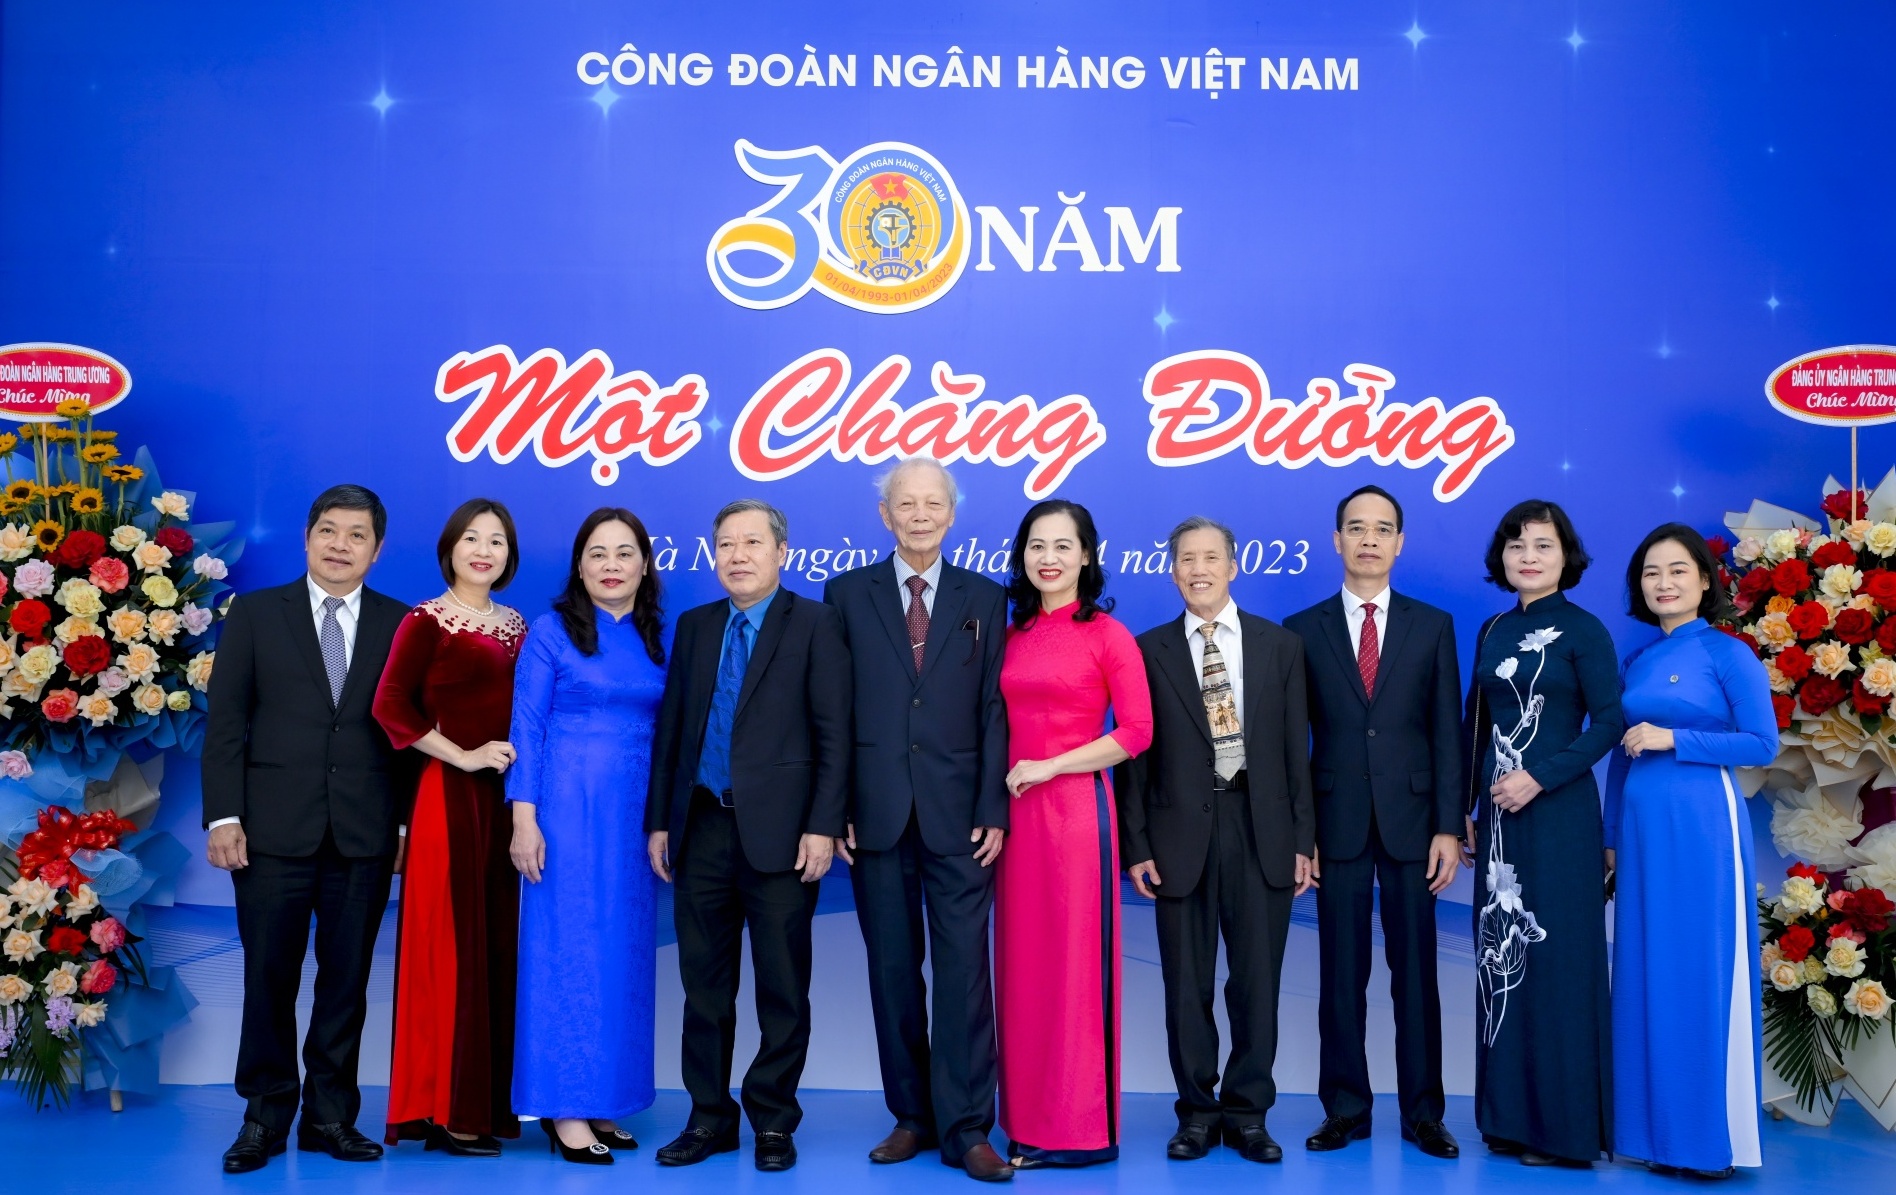 Công đoàn Ngân hàng Việt Nam kỷ niệm 30 năm ngày thành lập